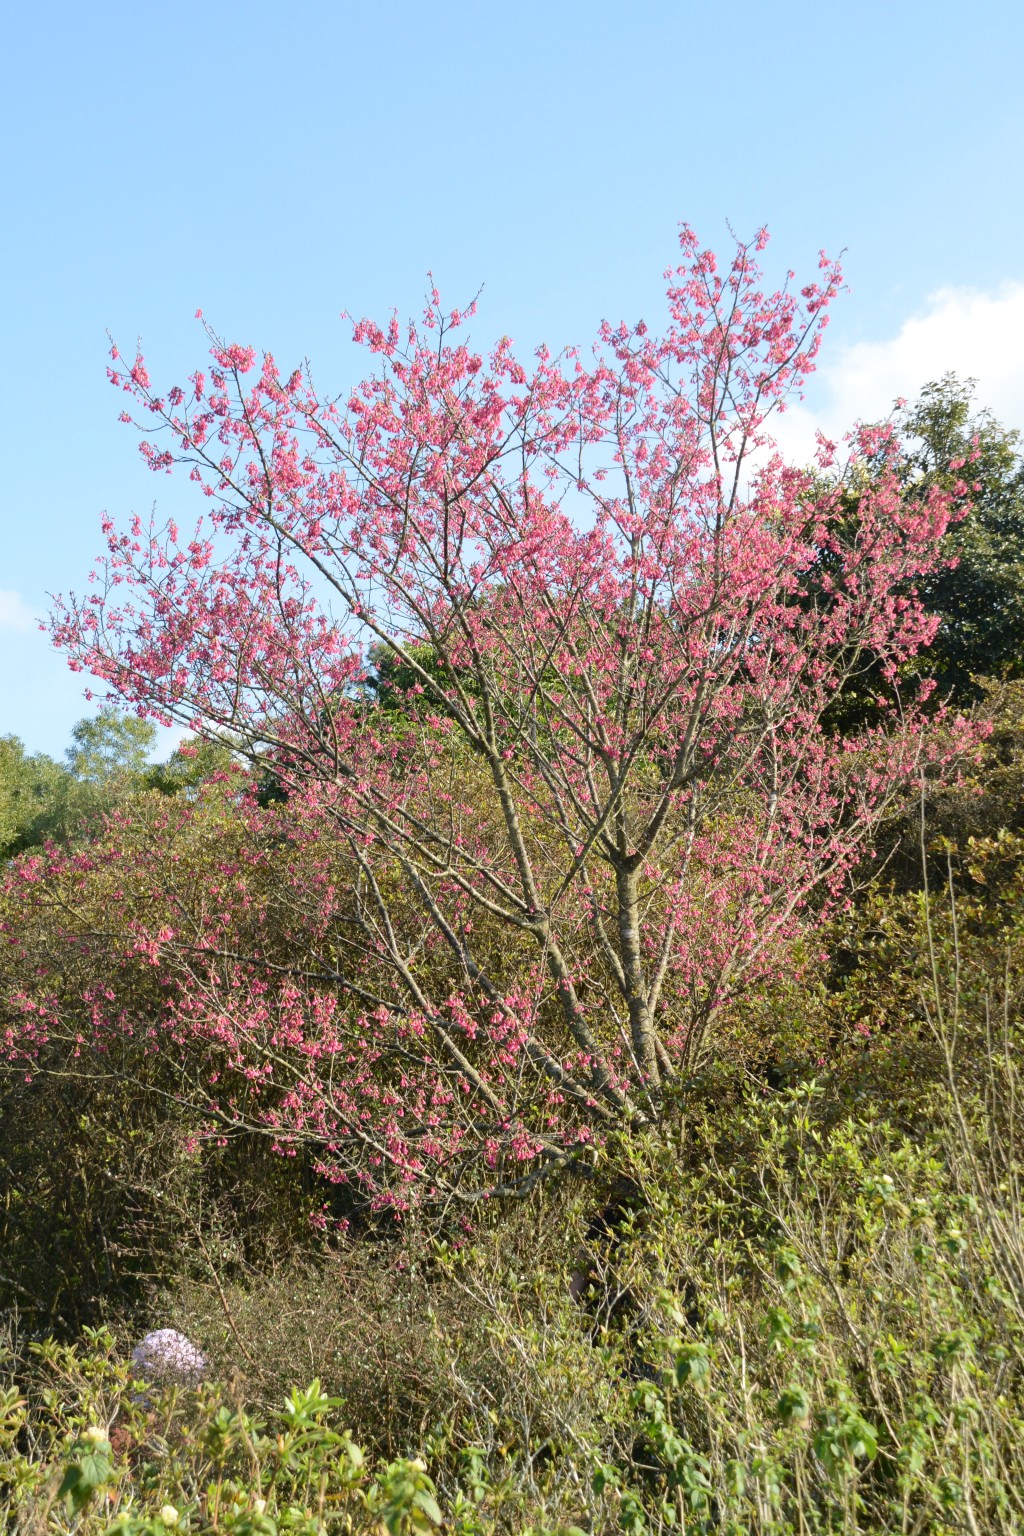 钟花樱桃的开花指数已达90%。